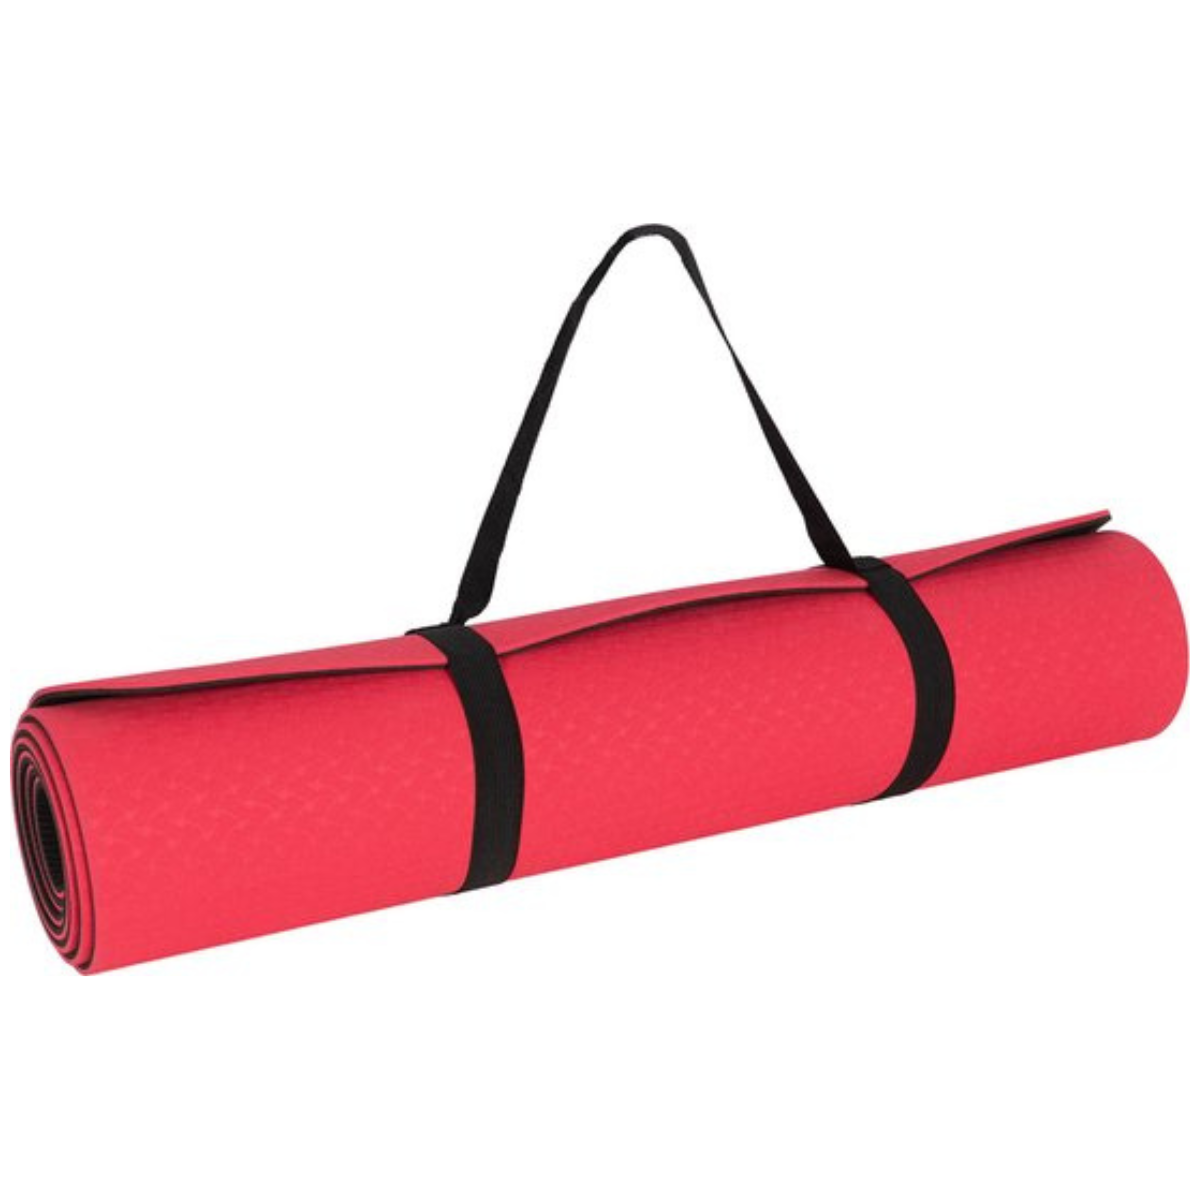 Nouveau Tapis de Fitness sportif-tapis de Yoga-tapis de sport avec antidérapant-rose-noir